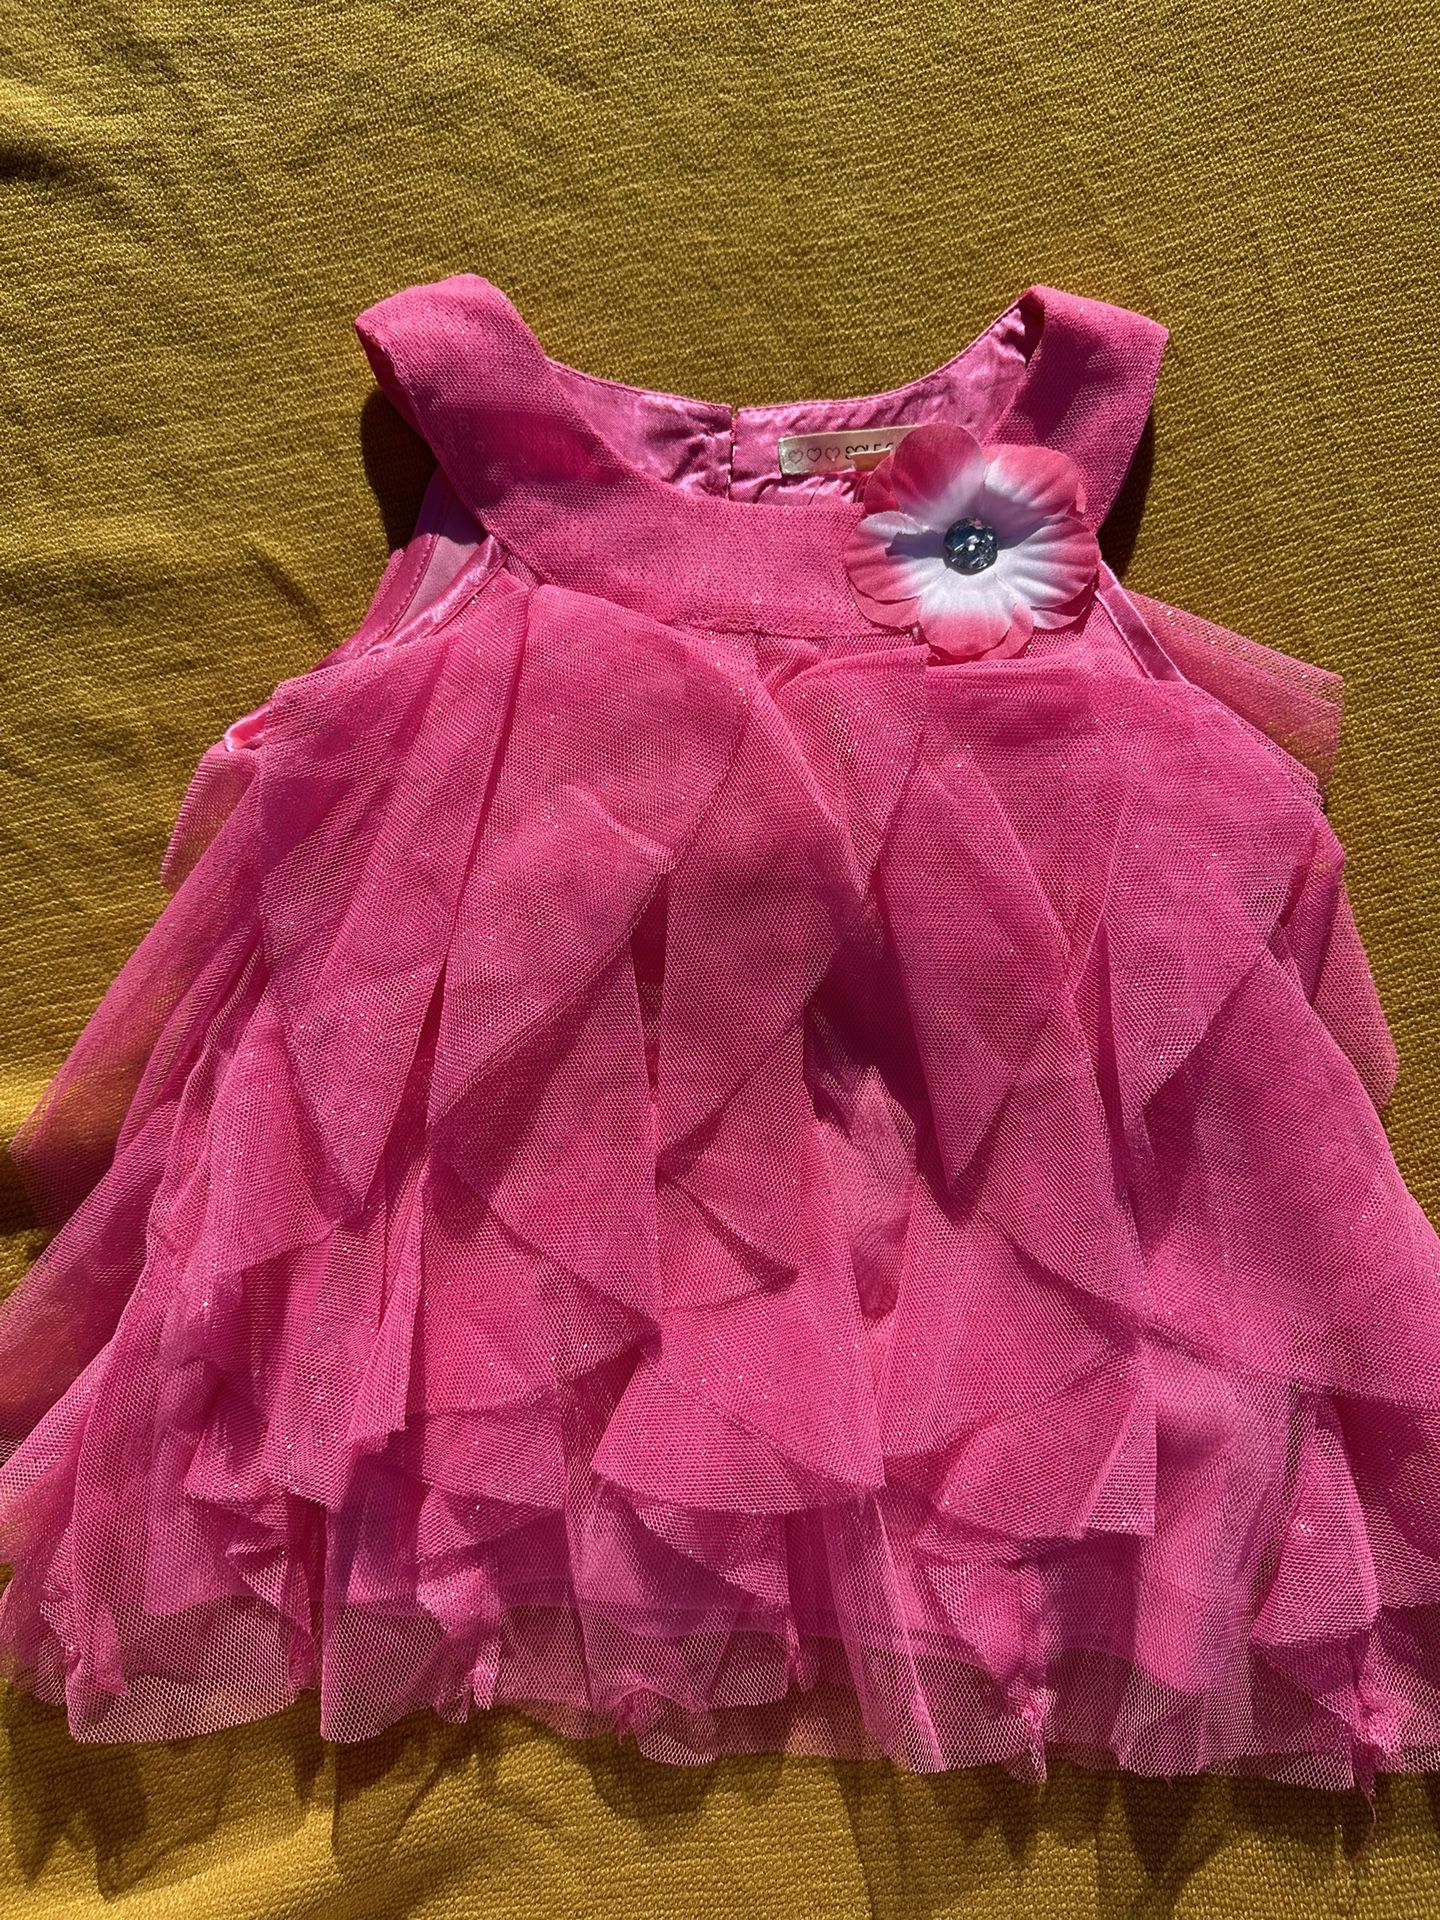 Ruffle Pink Toddler Dress